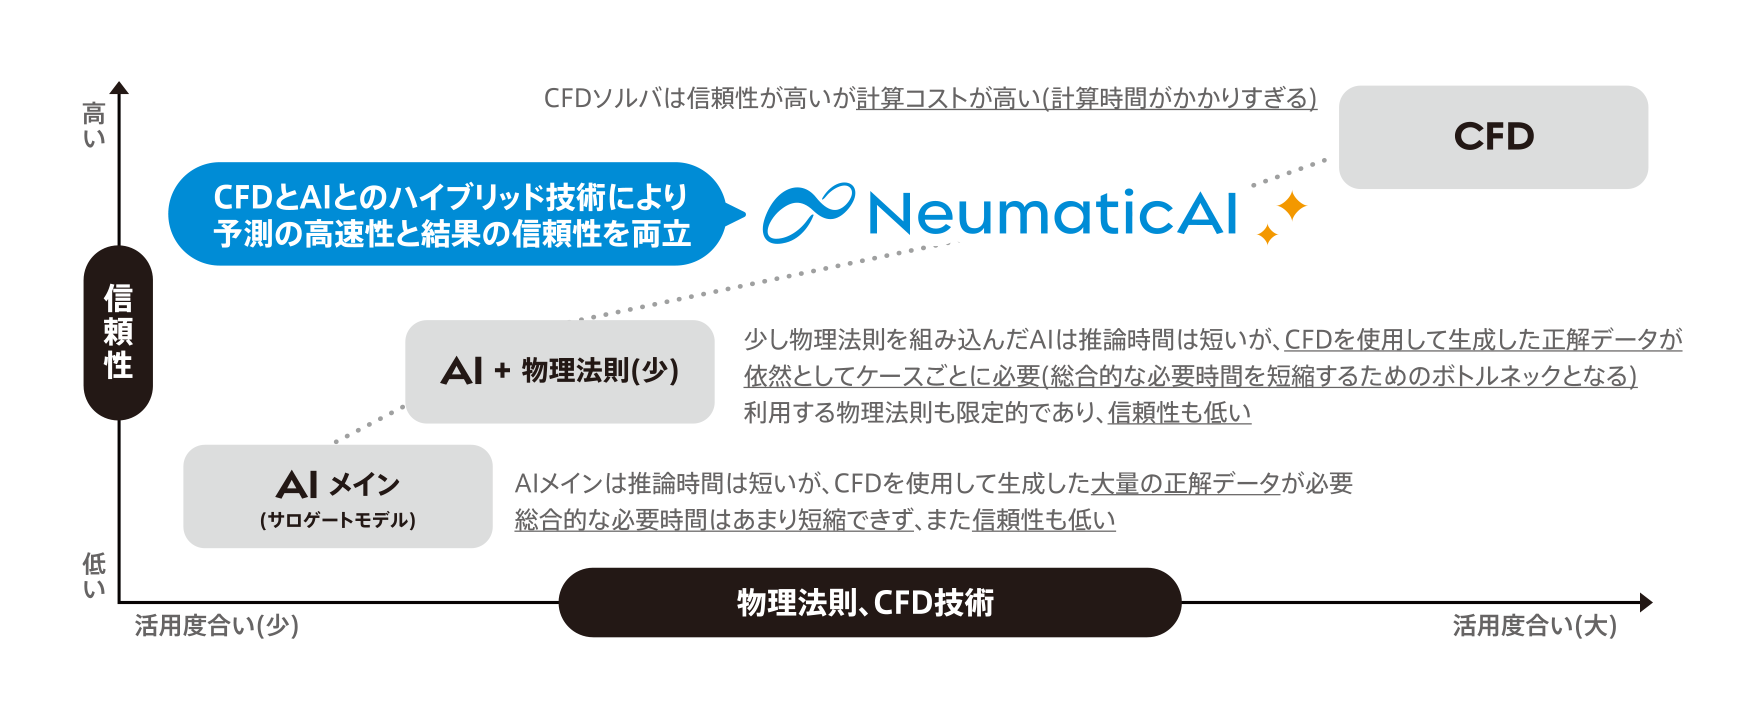 neumatic-card-2_2-1